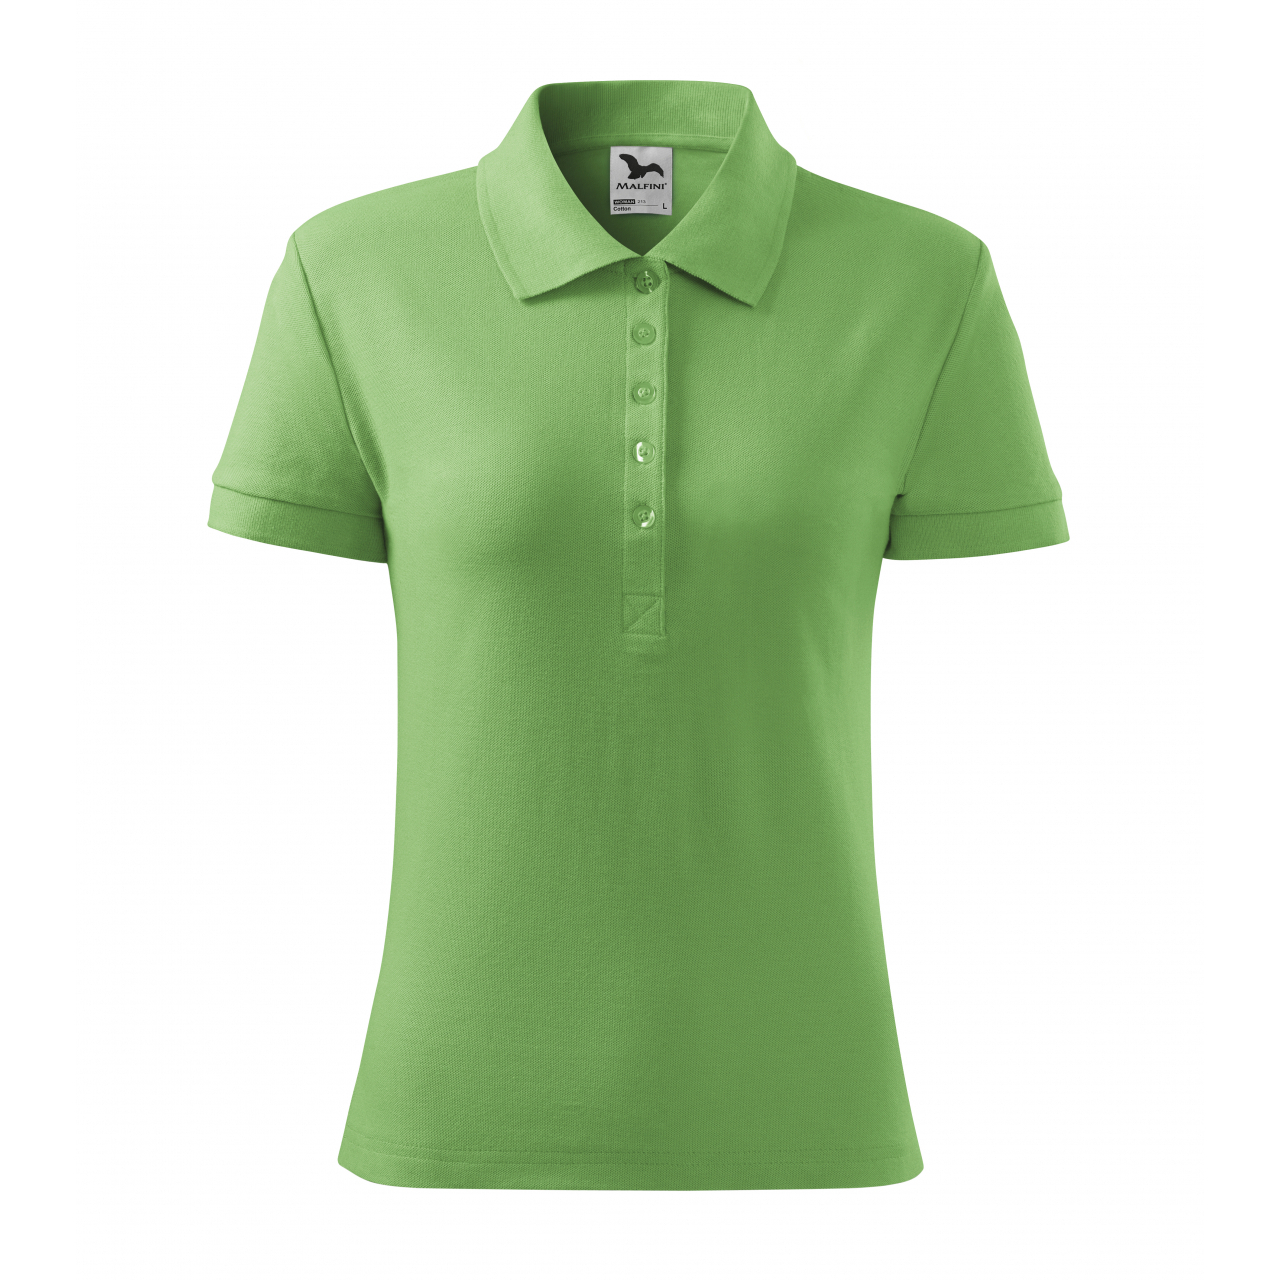 Polokošile dámská Malfini Cotton - světle zelená, XL